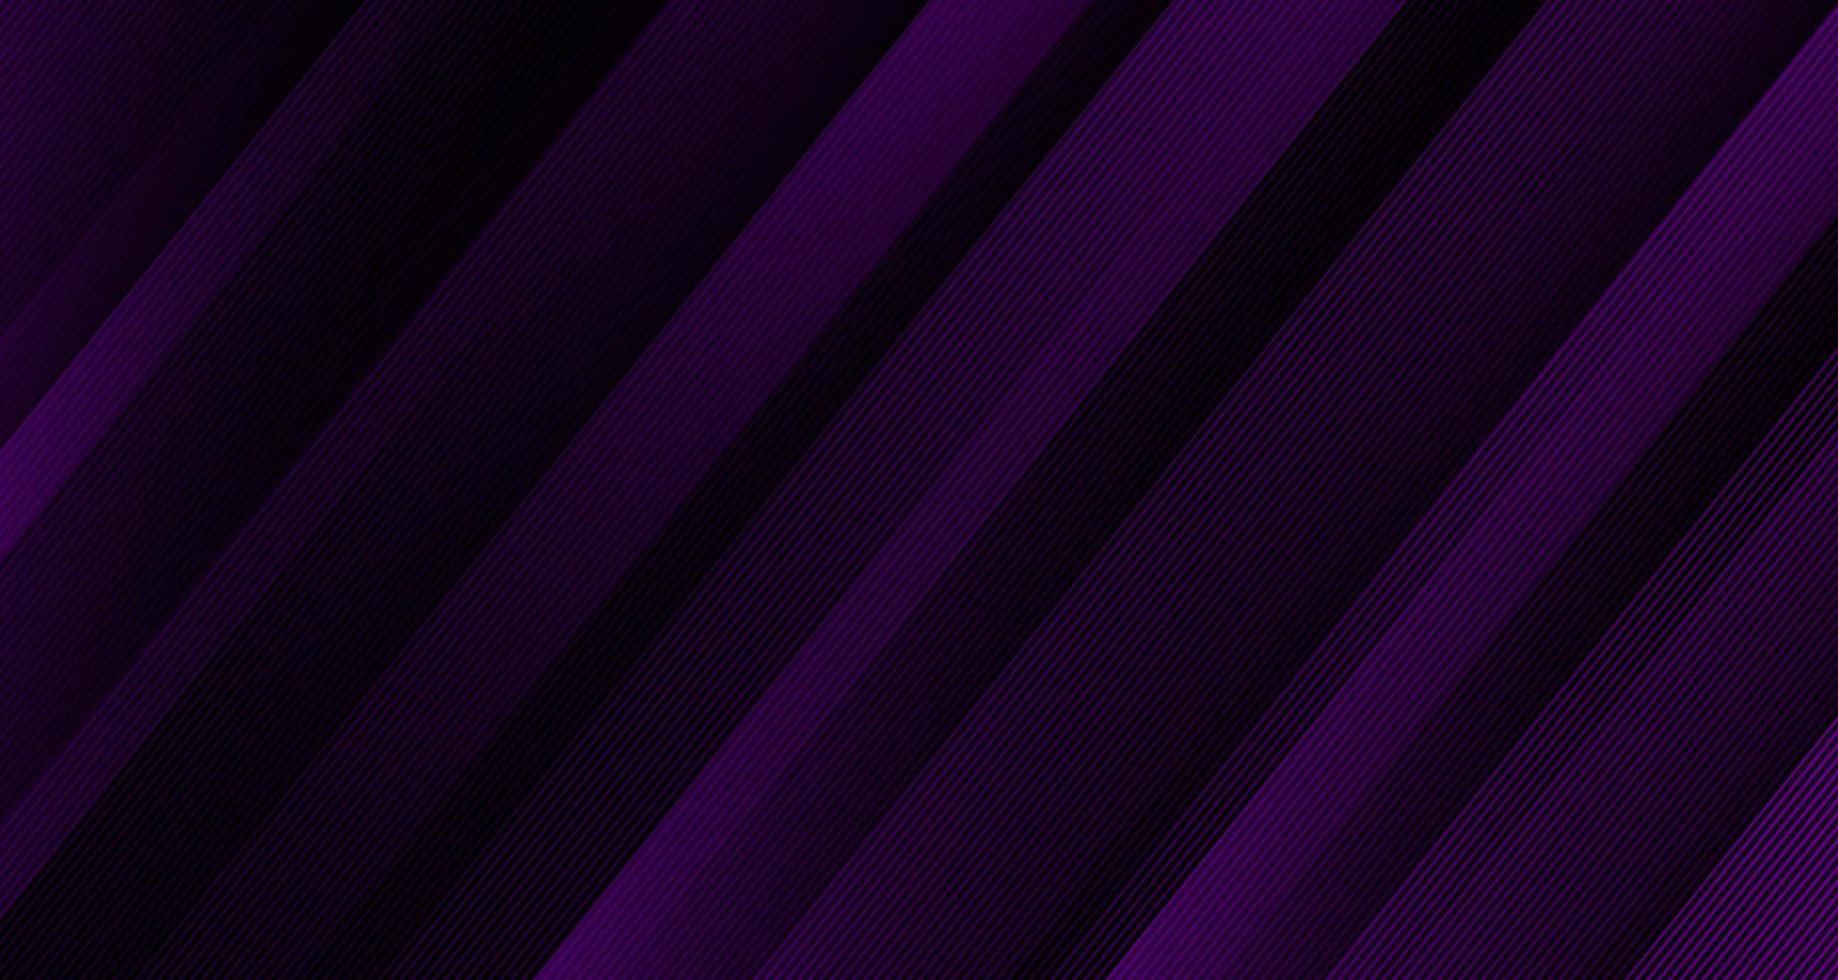 camada de sobreposição de fundo abstrato geométrico roxo 3d no espaço escuro com decoração de linhas diagonais. elemento de design gráfico moderno estilo listrado para banner, folheto, cartão, capa de brochura ou página de destino vetor